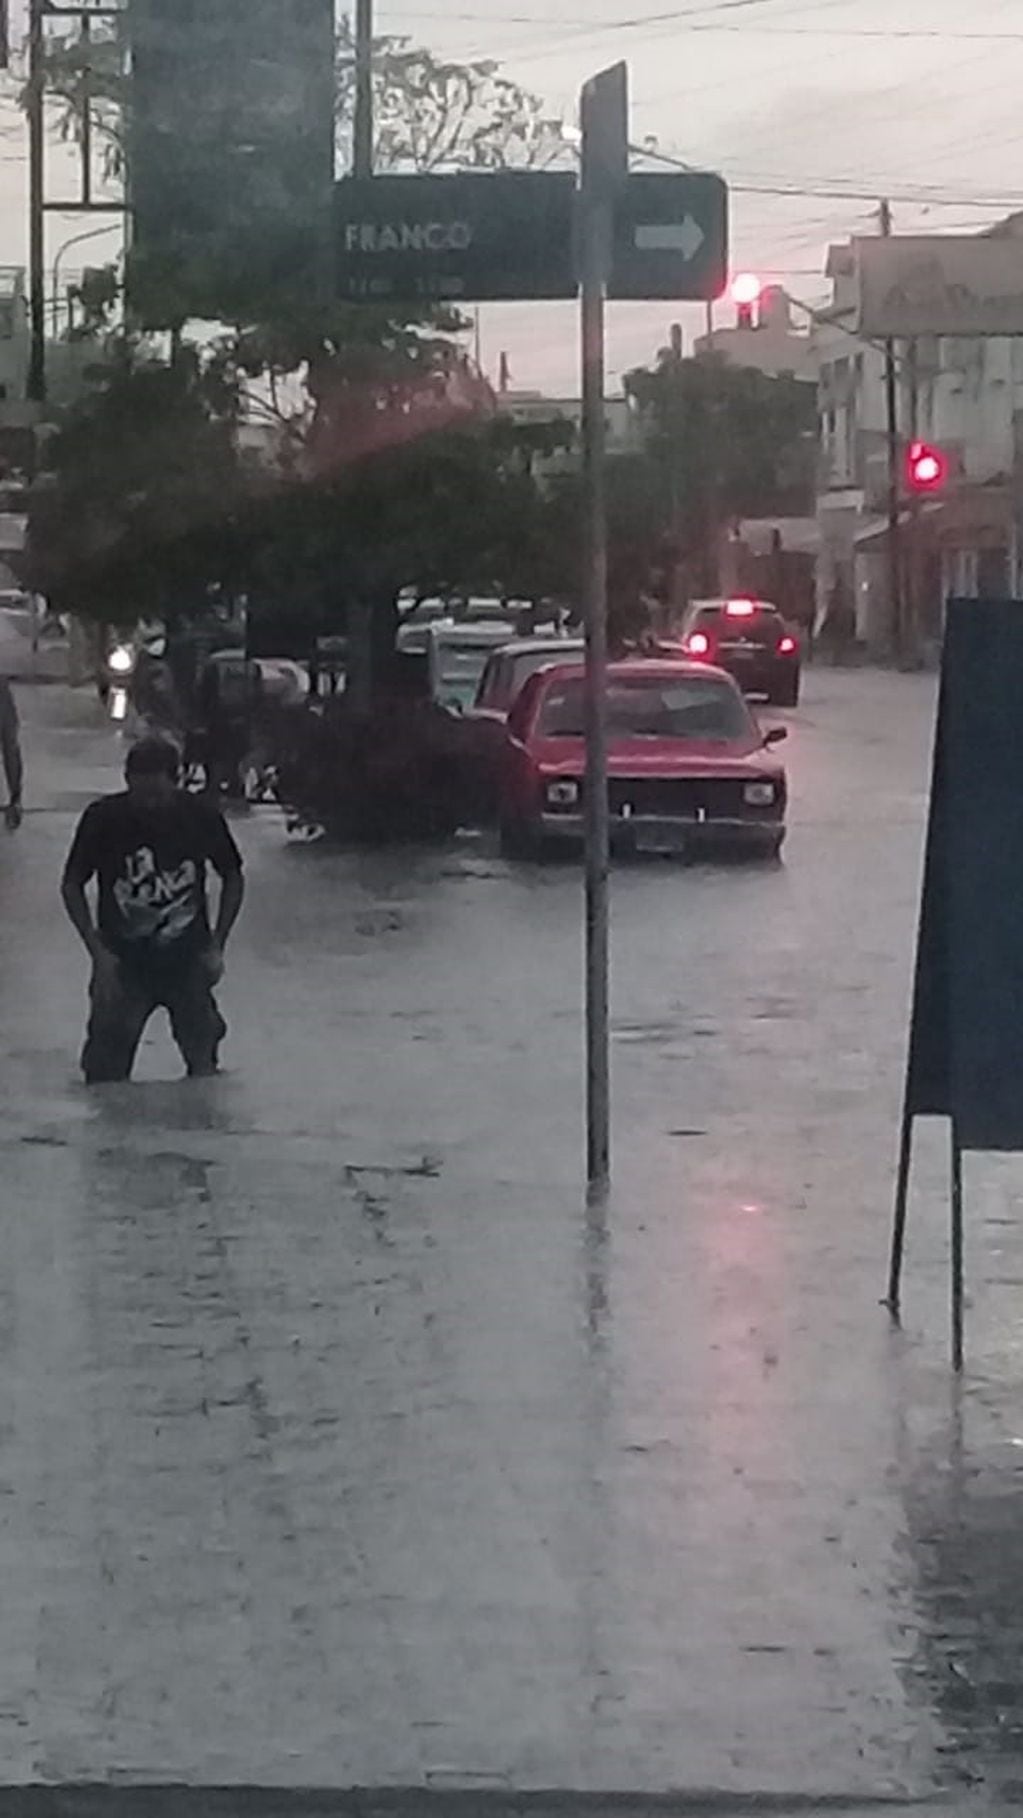 Calles inundadas
Crédito: Vecinos de Gualeguaychú